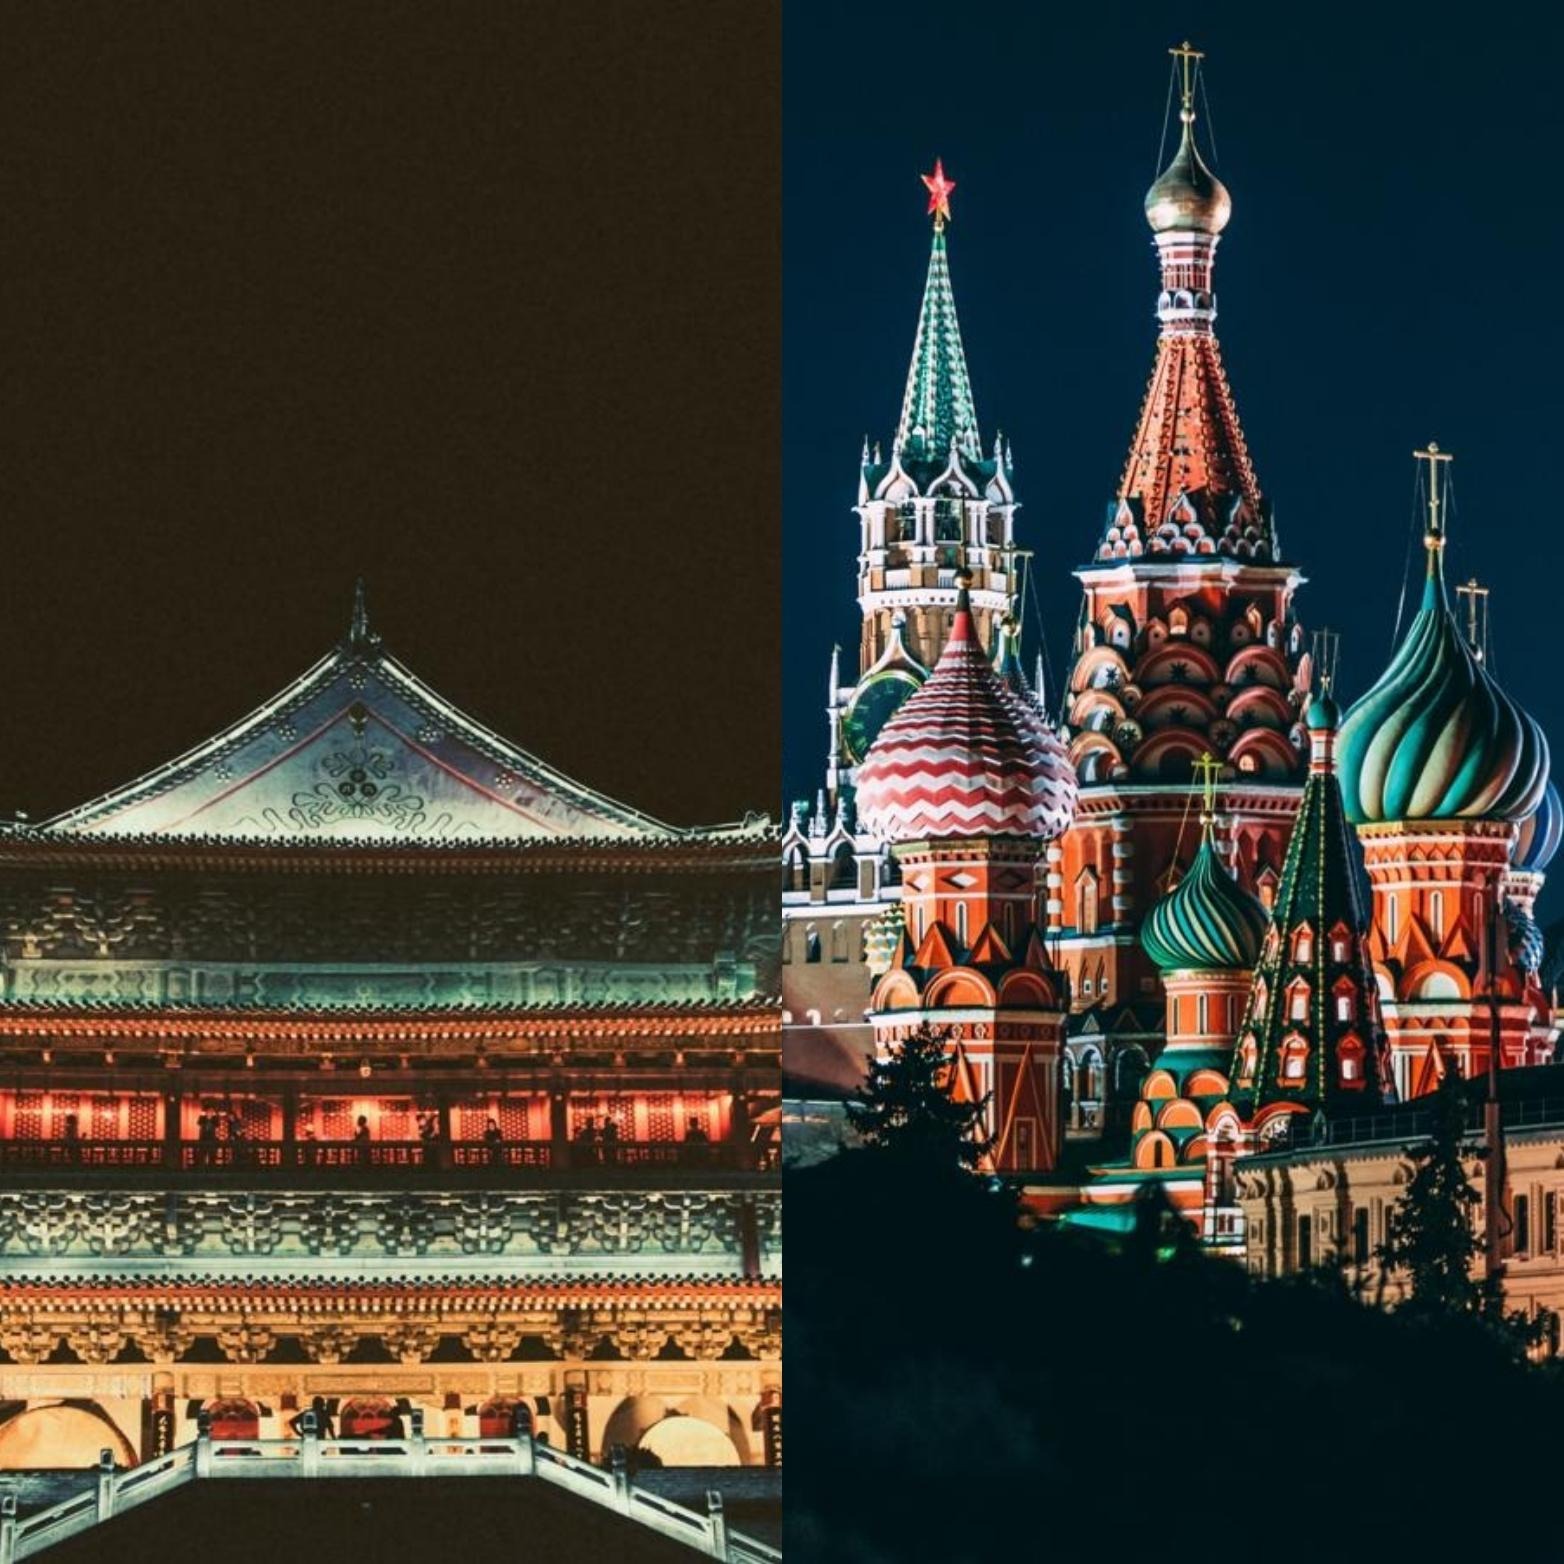 Doit-on s’inquiéter d’une alliance cybercriminelle russo-chinoise ?